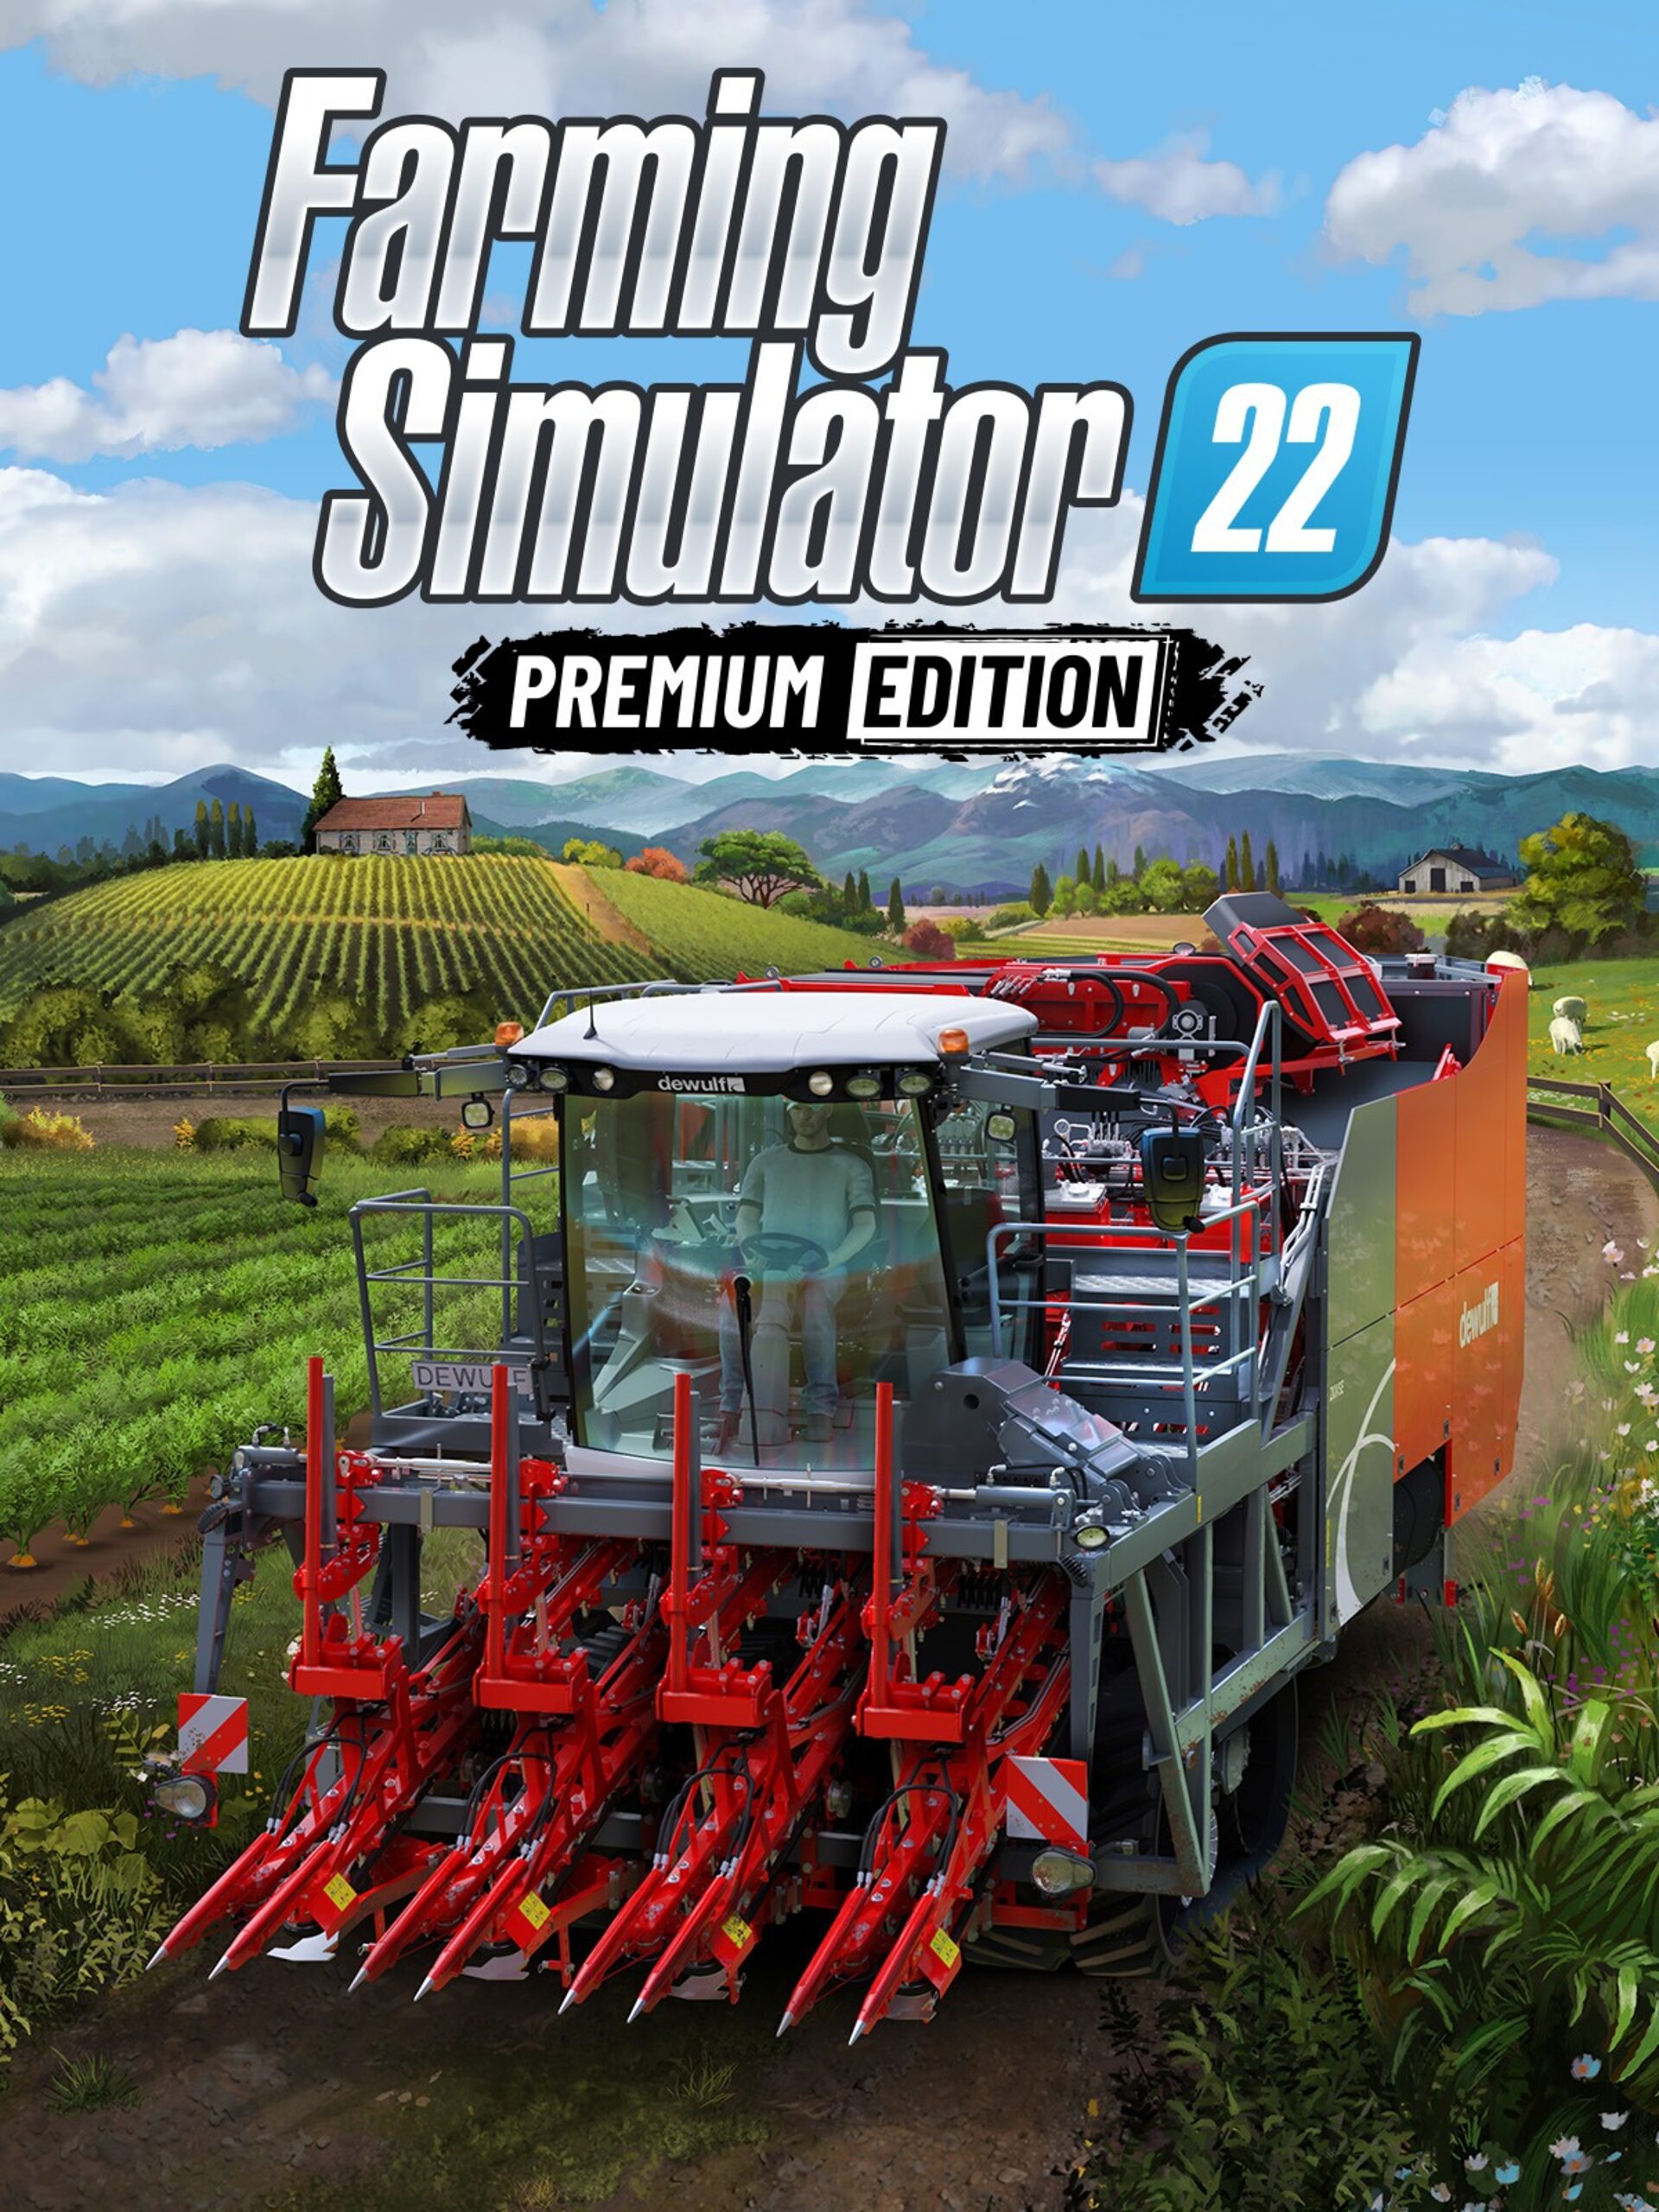 Buy Farming Simulator 22 - Platinum Edition (PC)